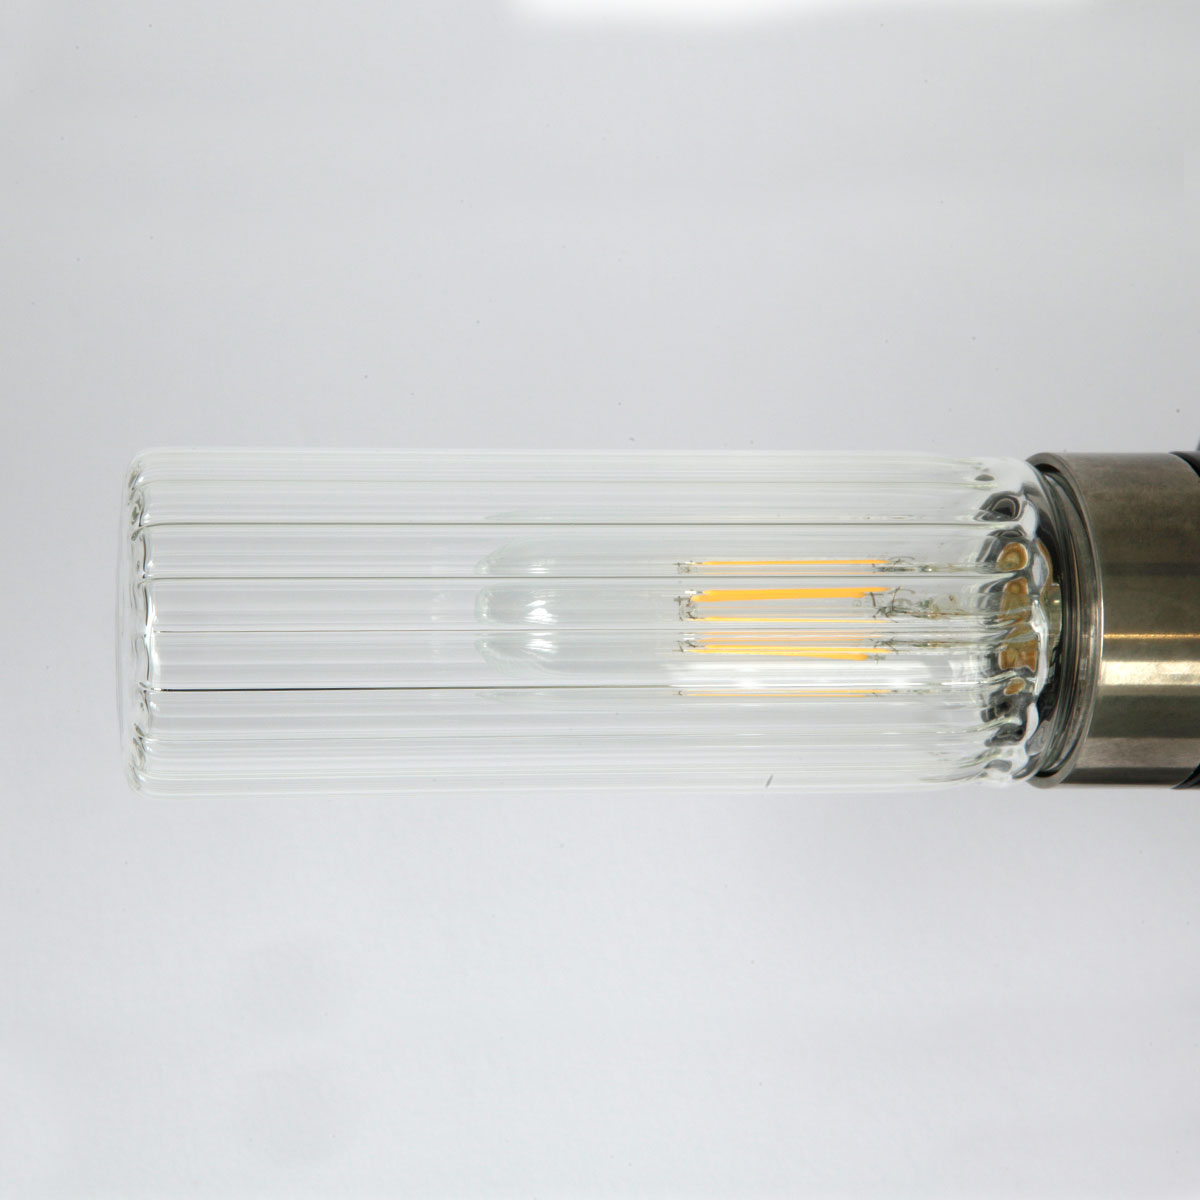 Badezimmer-Wandlampe mit kleinem Glaszylinder (klar oder prismatisch), IP65: Messing alt-silbern patiniert, gerilltes prismatisches Glas